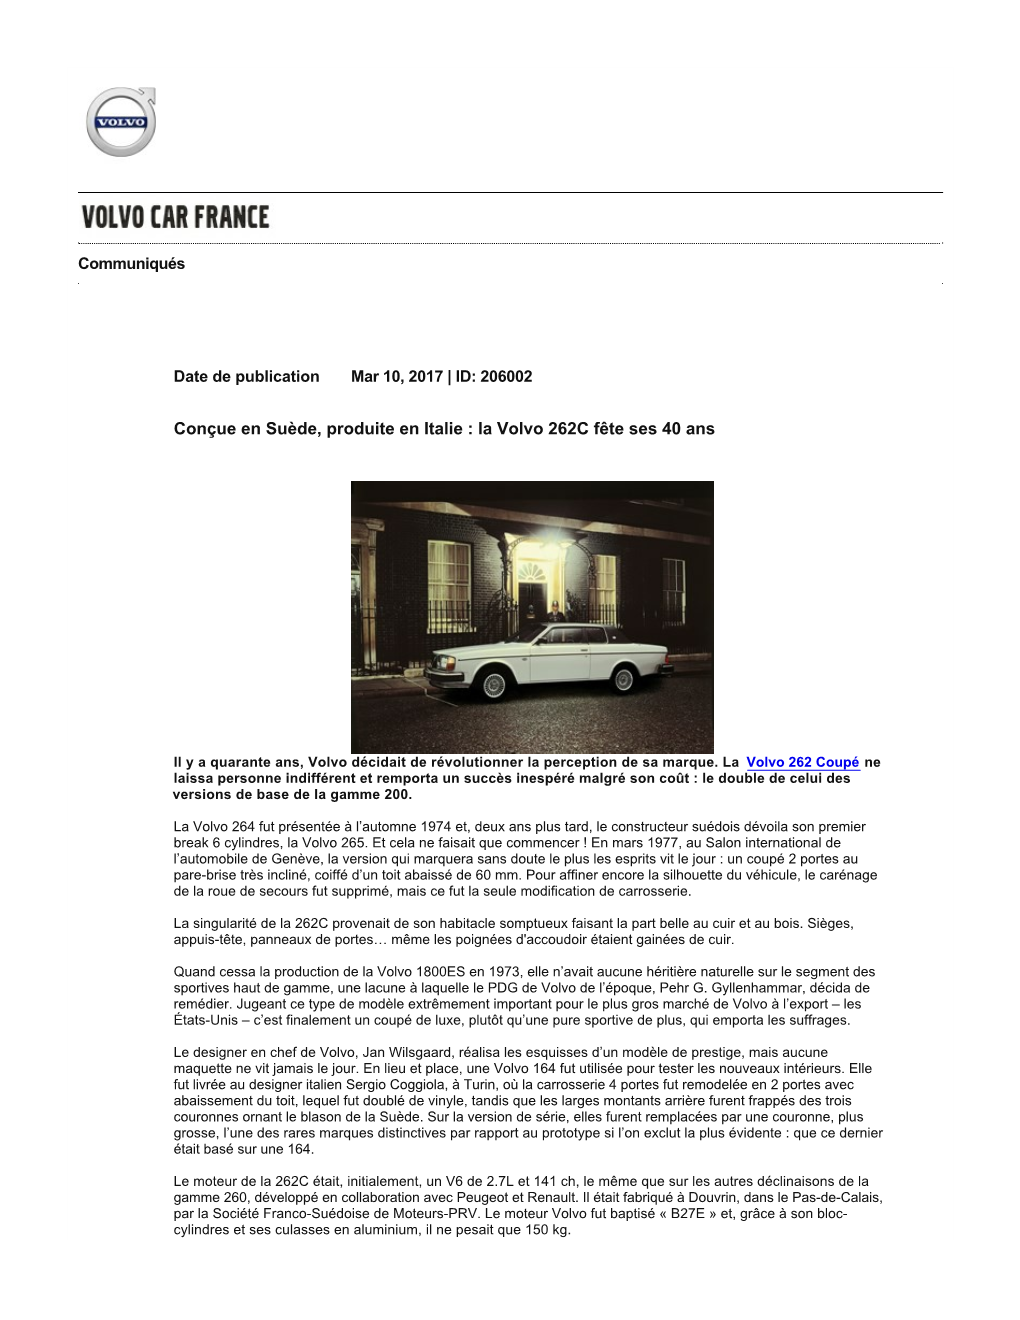 Conçue En Suède, Produite En Italie : La Volvo 262C Fête Ses 40 Ans